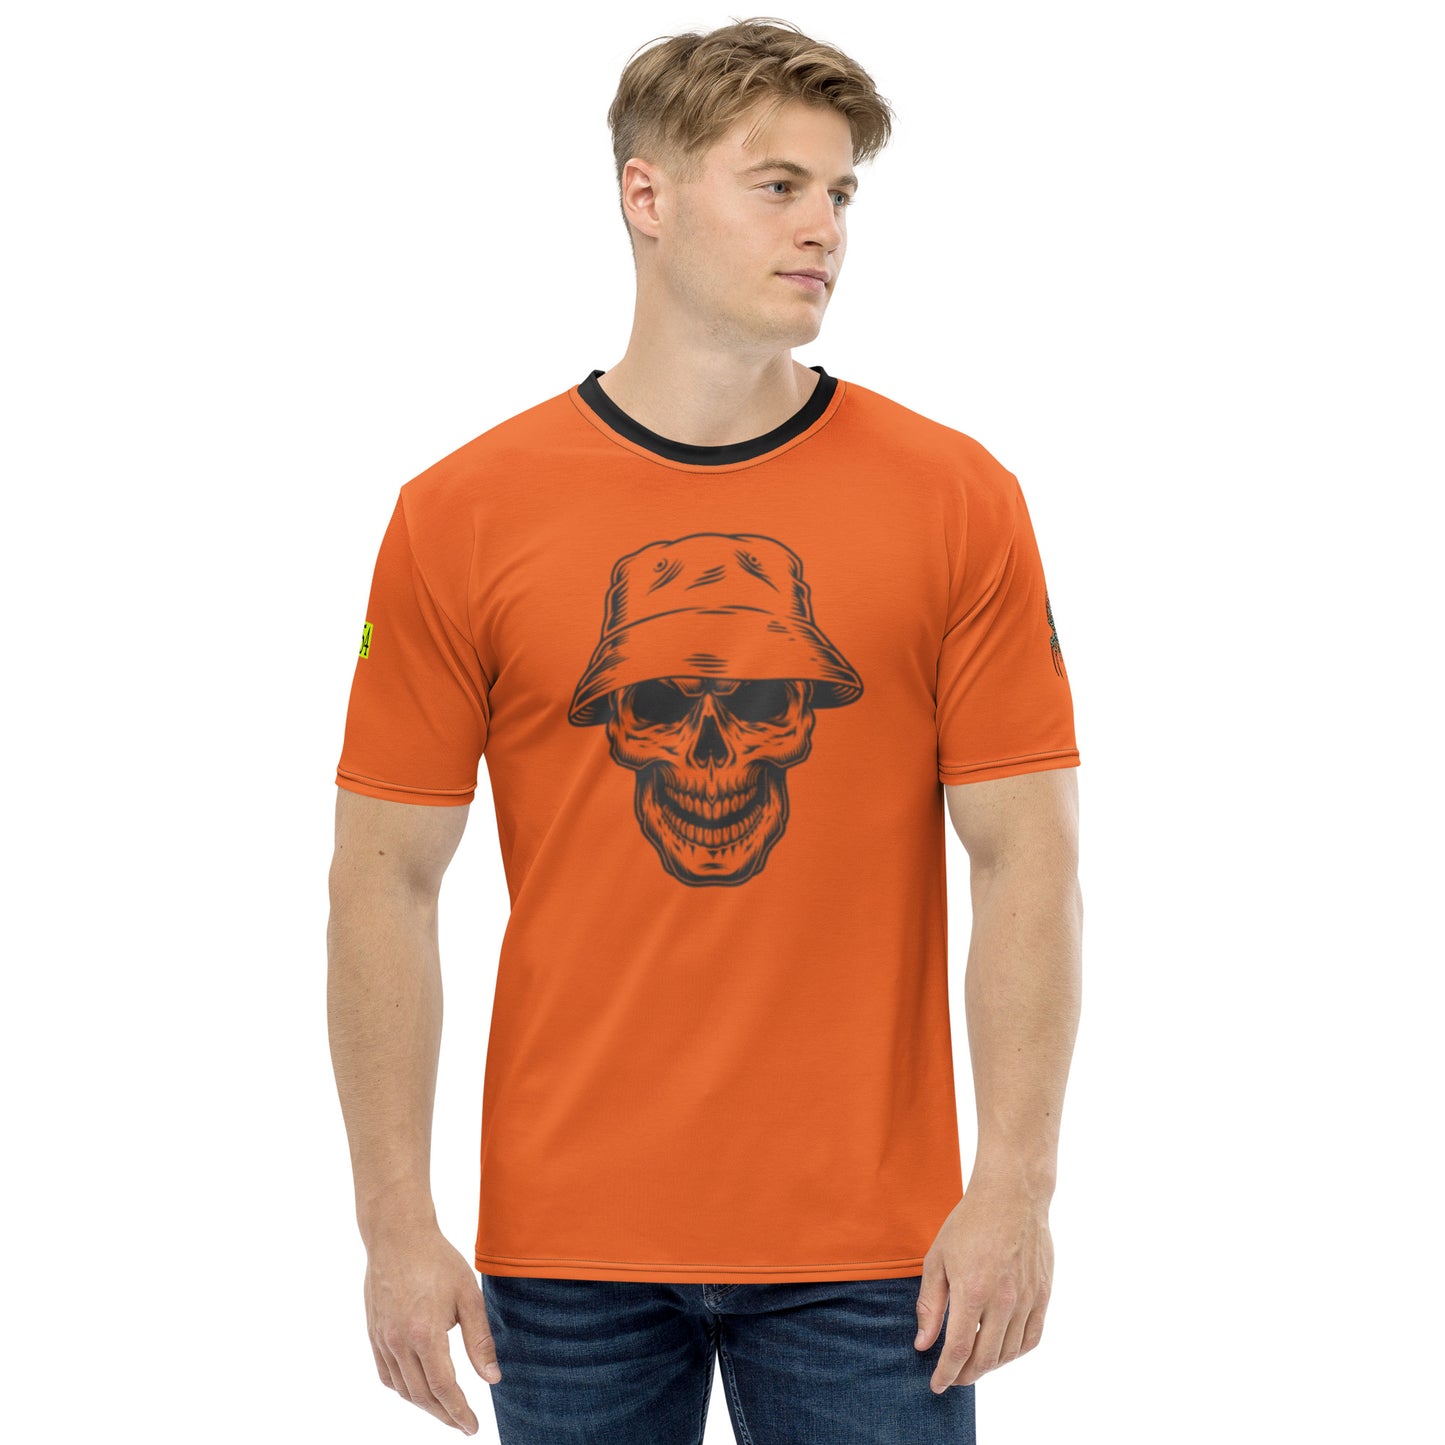 Halloween SW 954 Men's t-shirt